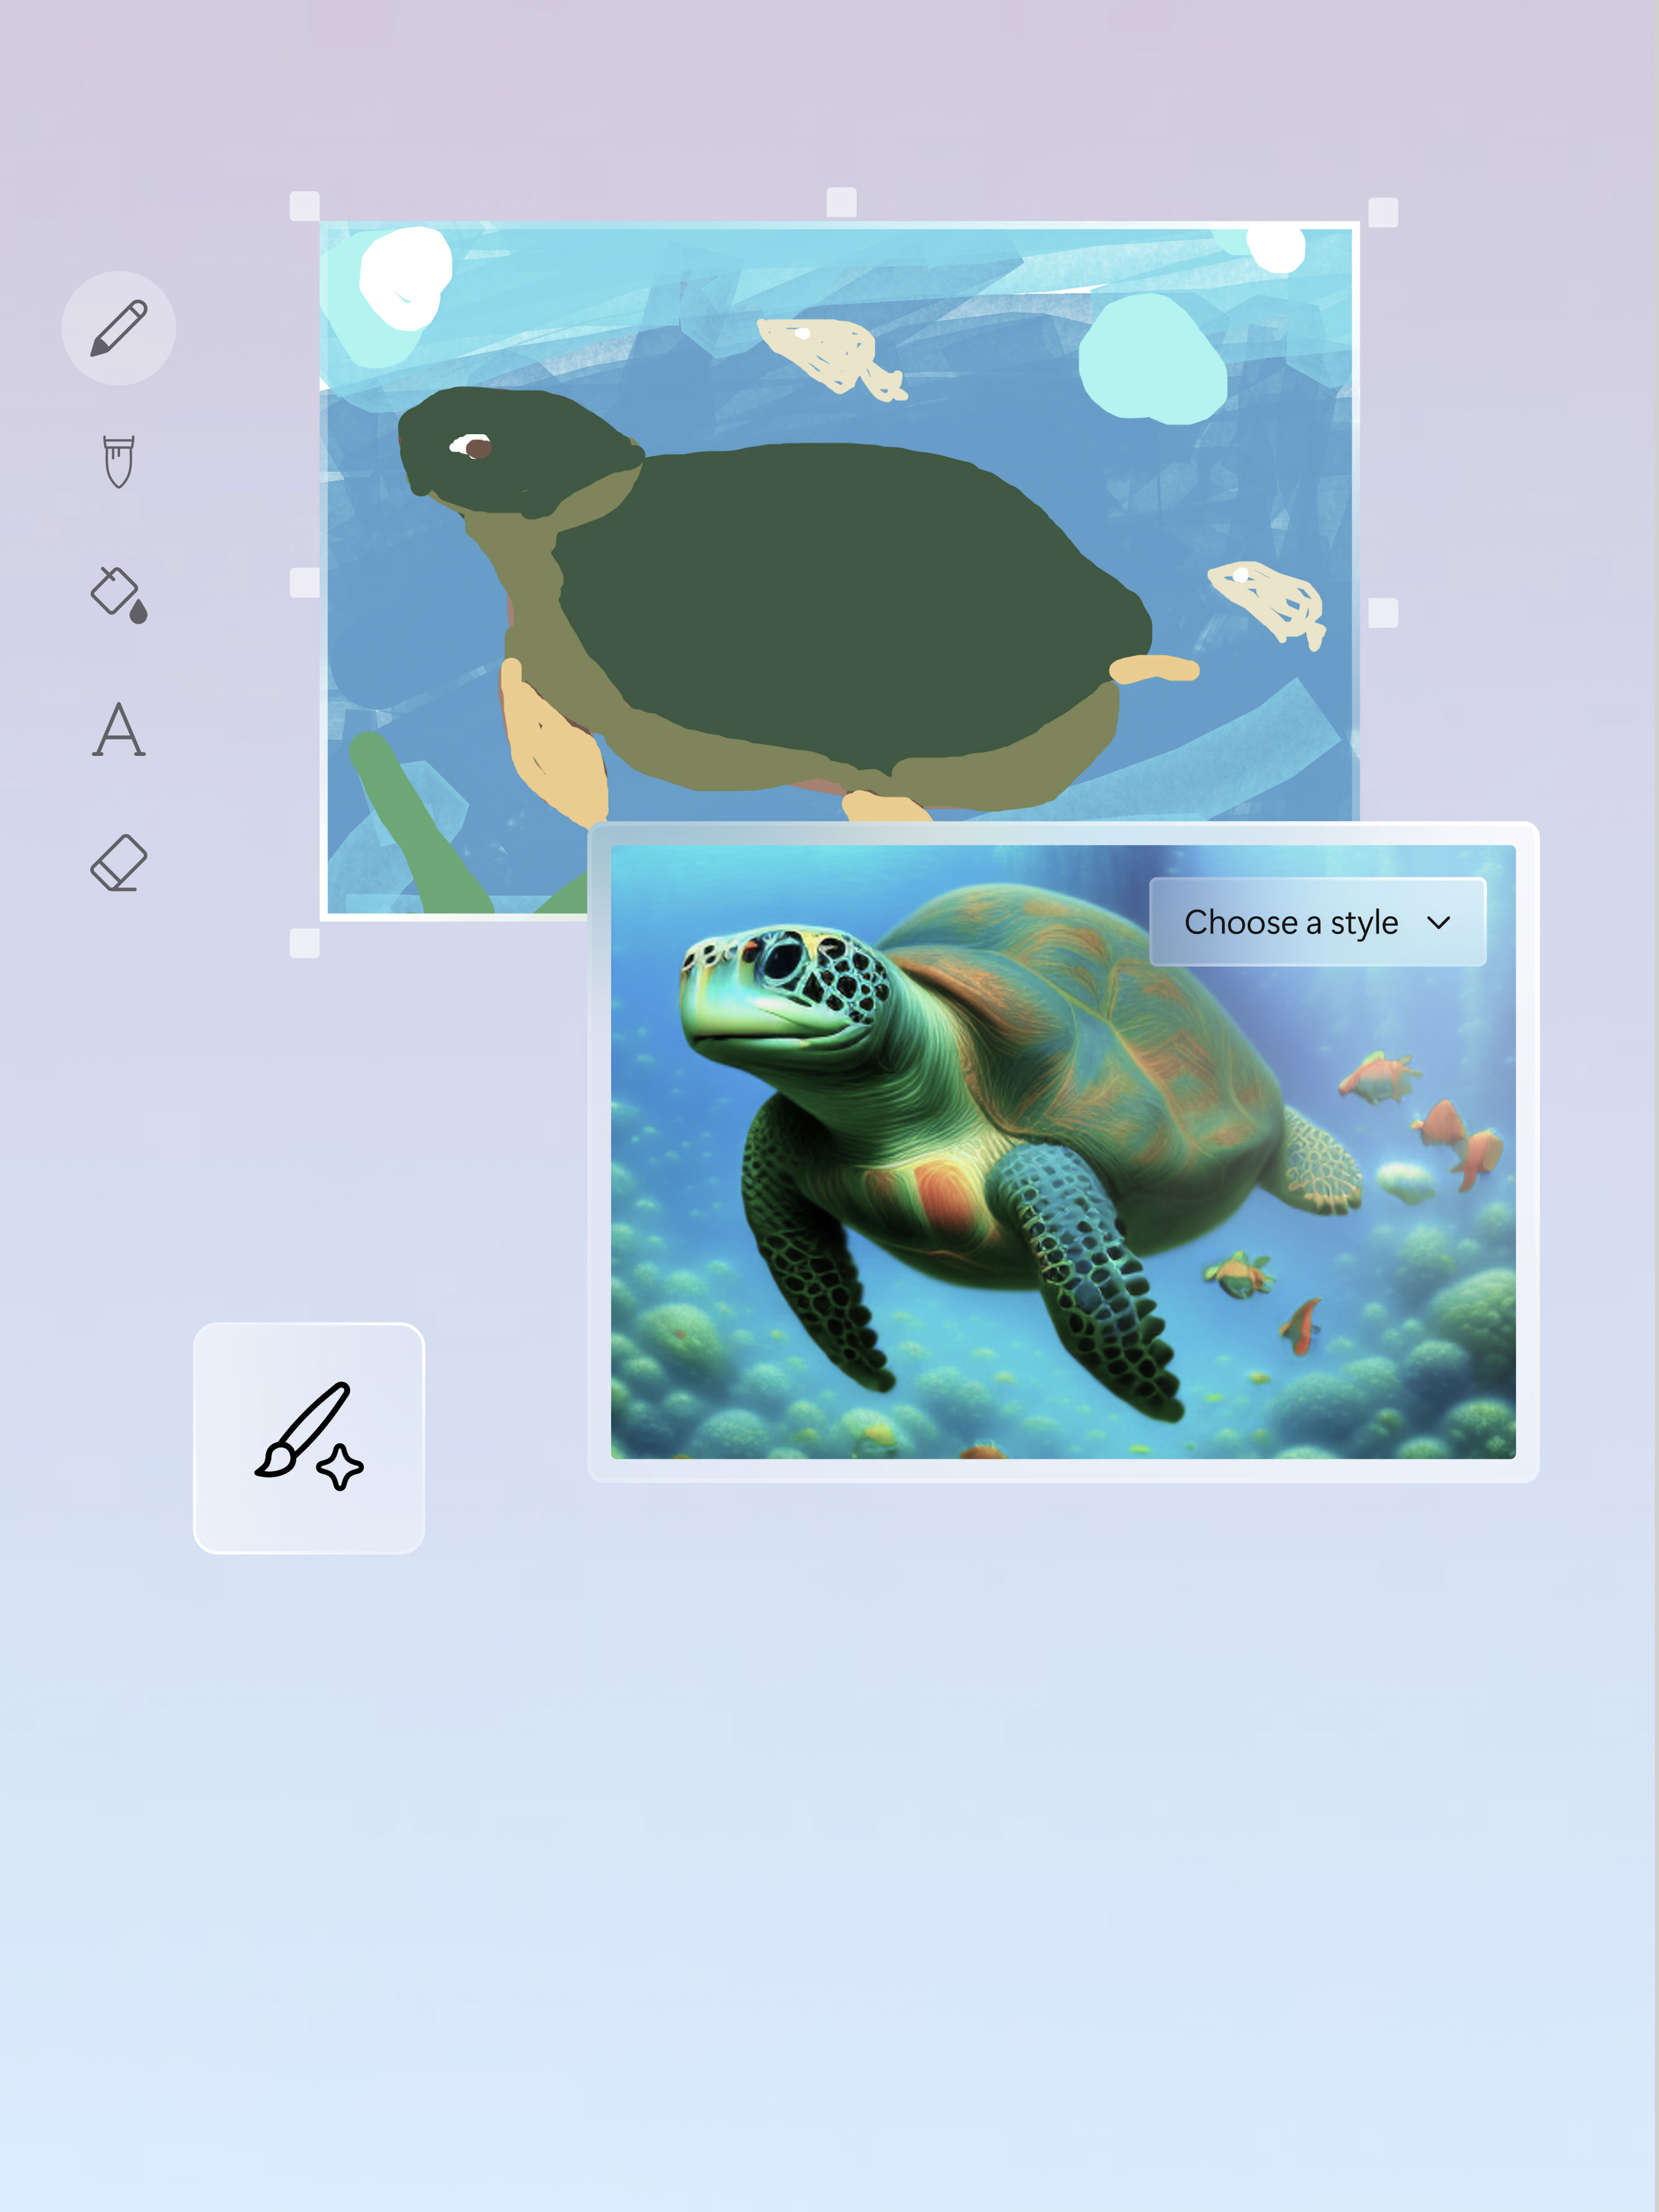 Un rendu artistique et une image d’une tortue